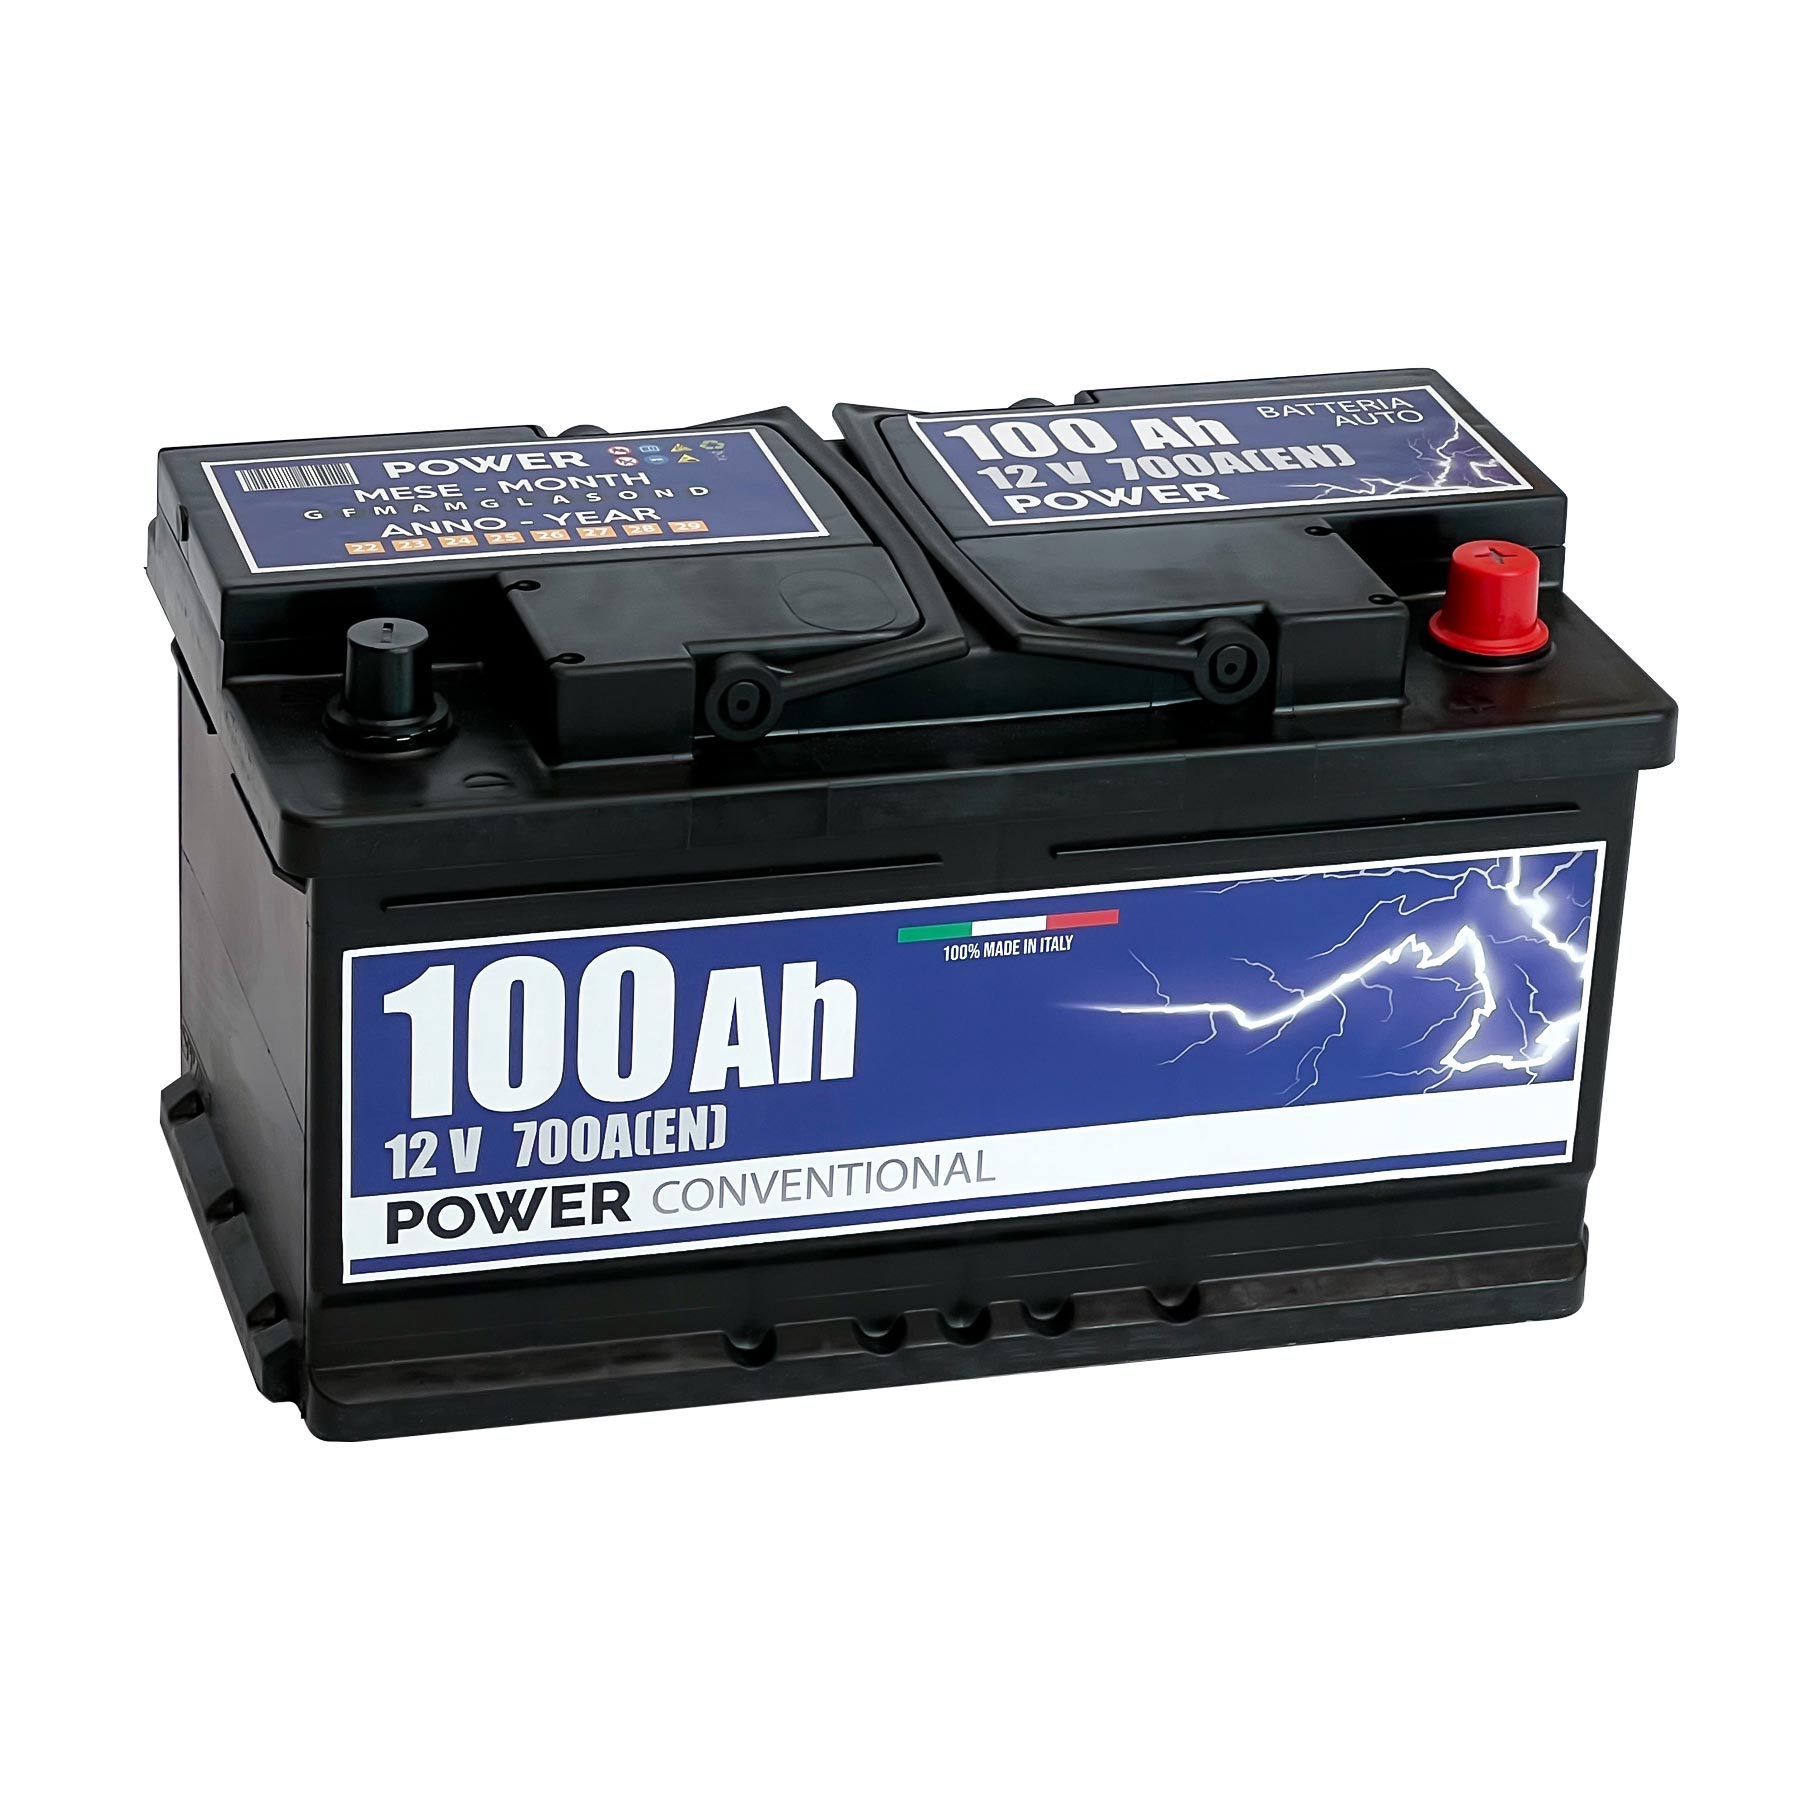 Batterie GEL 12V/5AH pour REX RS 250 450 460 500 600 700 750 900